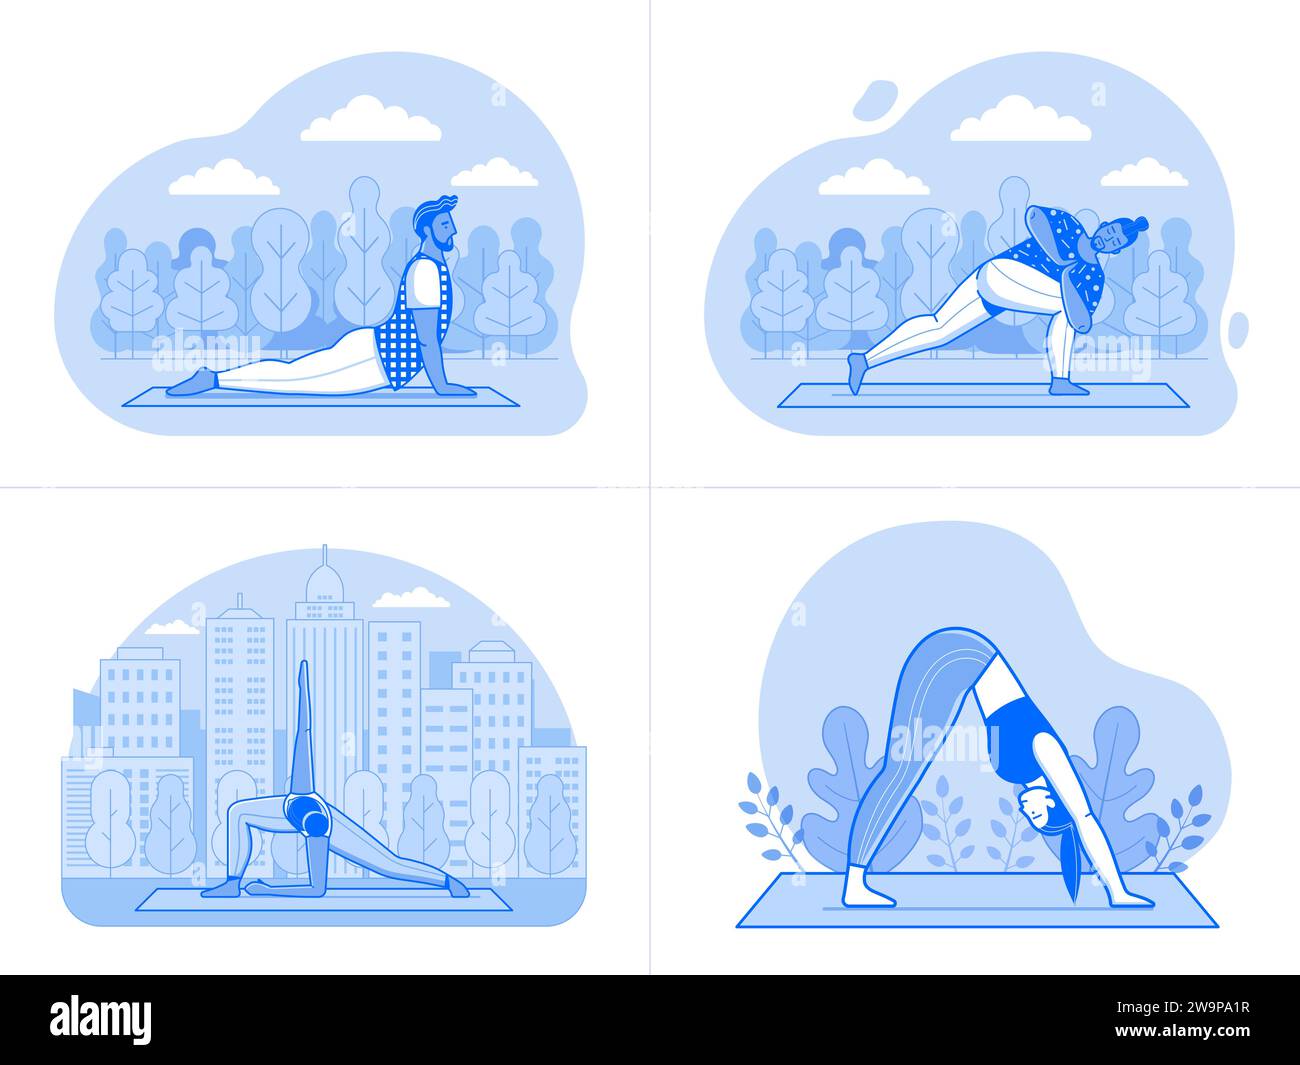 Diverses personnes faisant du yoga entraînement en plein air au parc Illustration de Vecteur